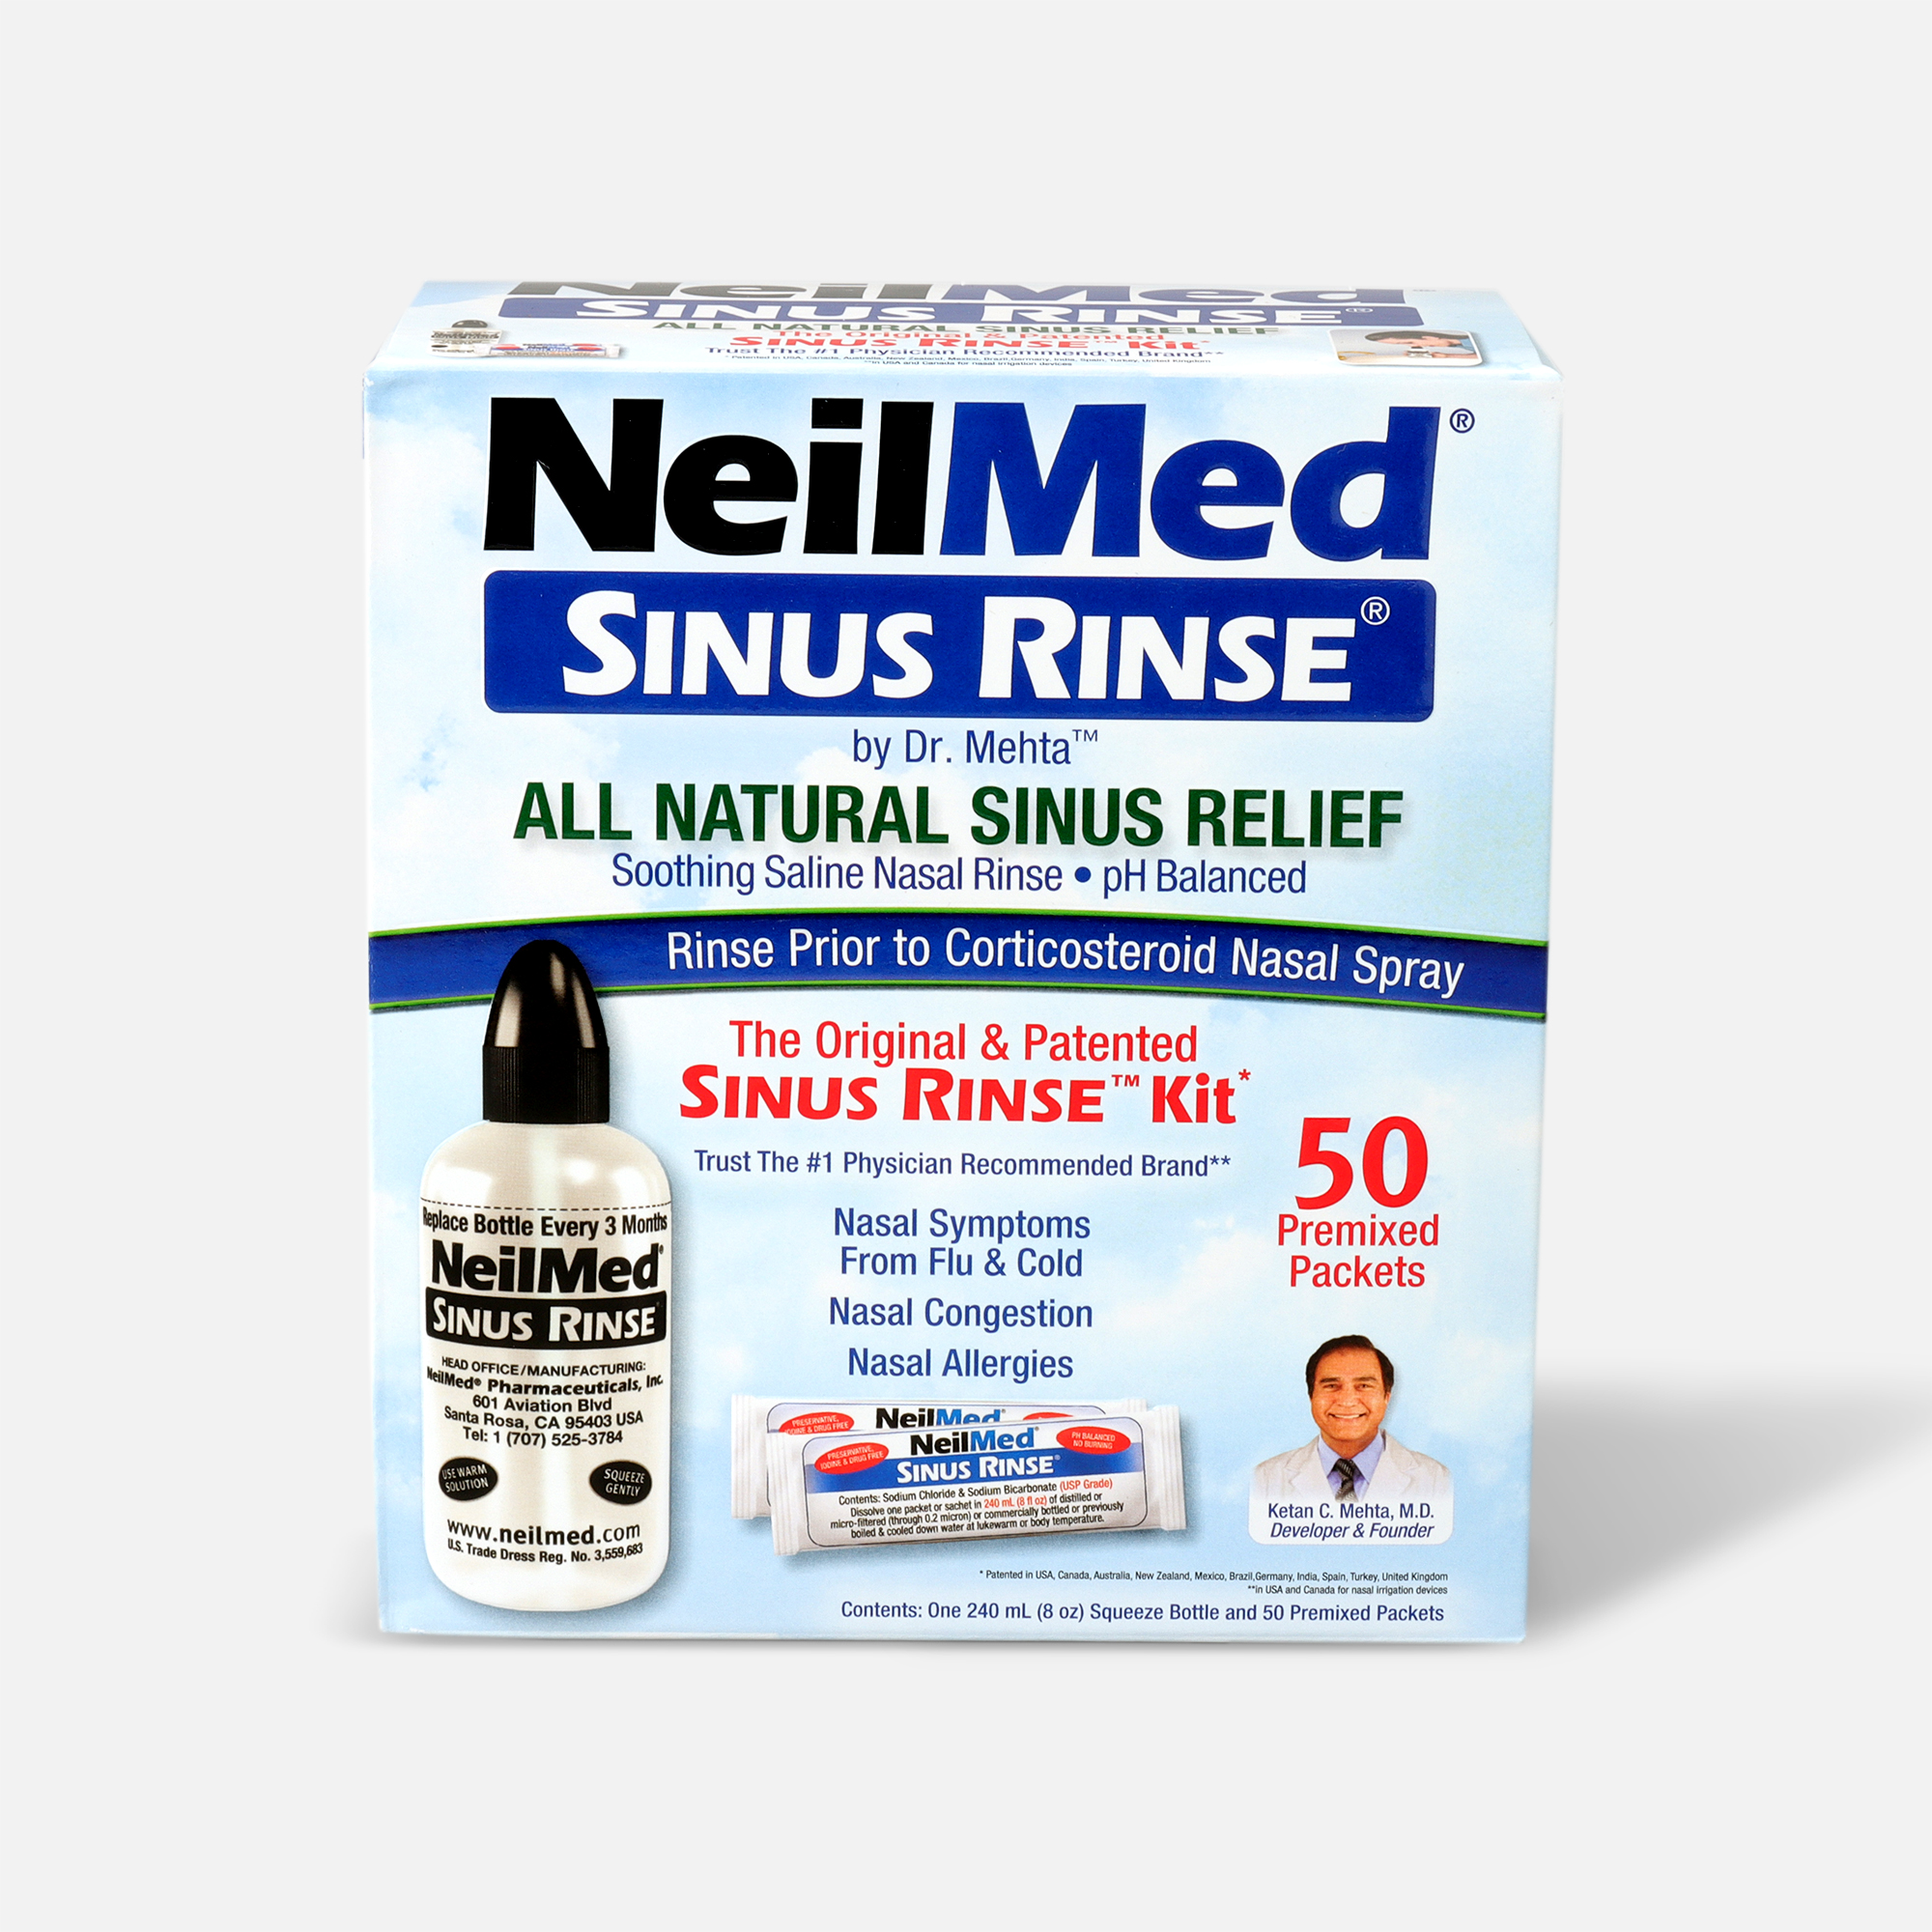 Neilmed Sinus Rinse Starter Kit - 8 oz. Bottle & 5 Packets